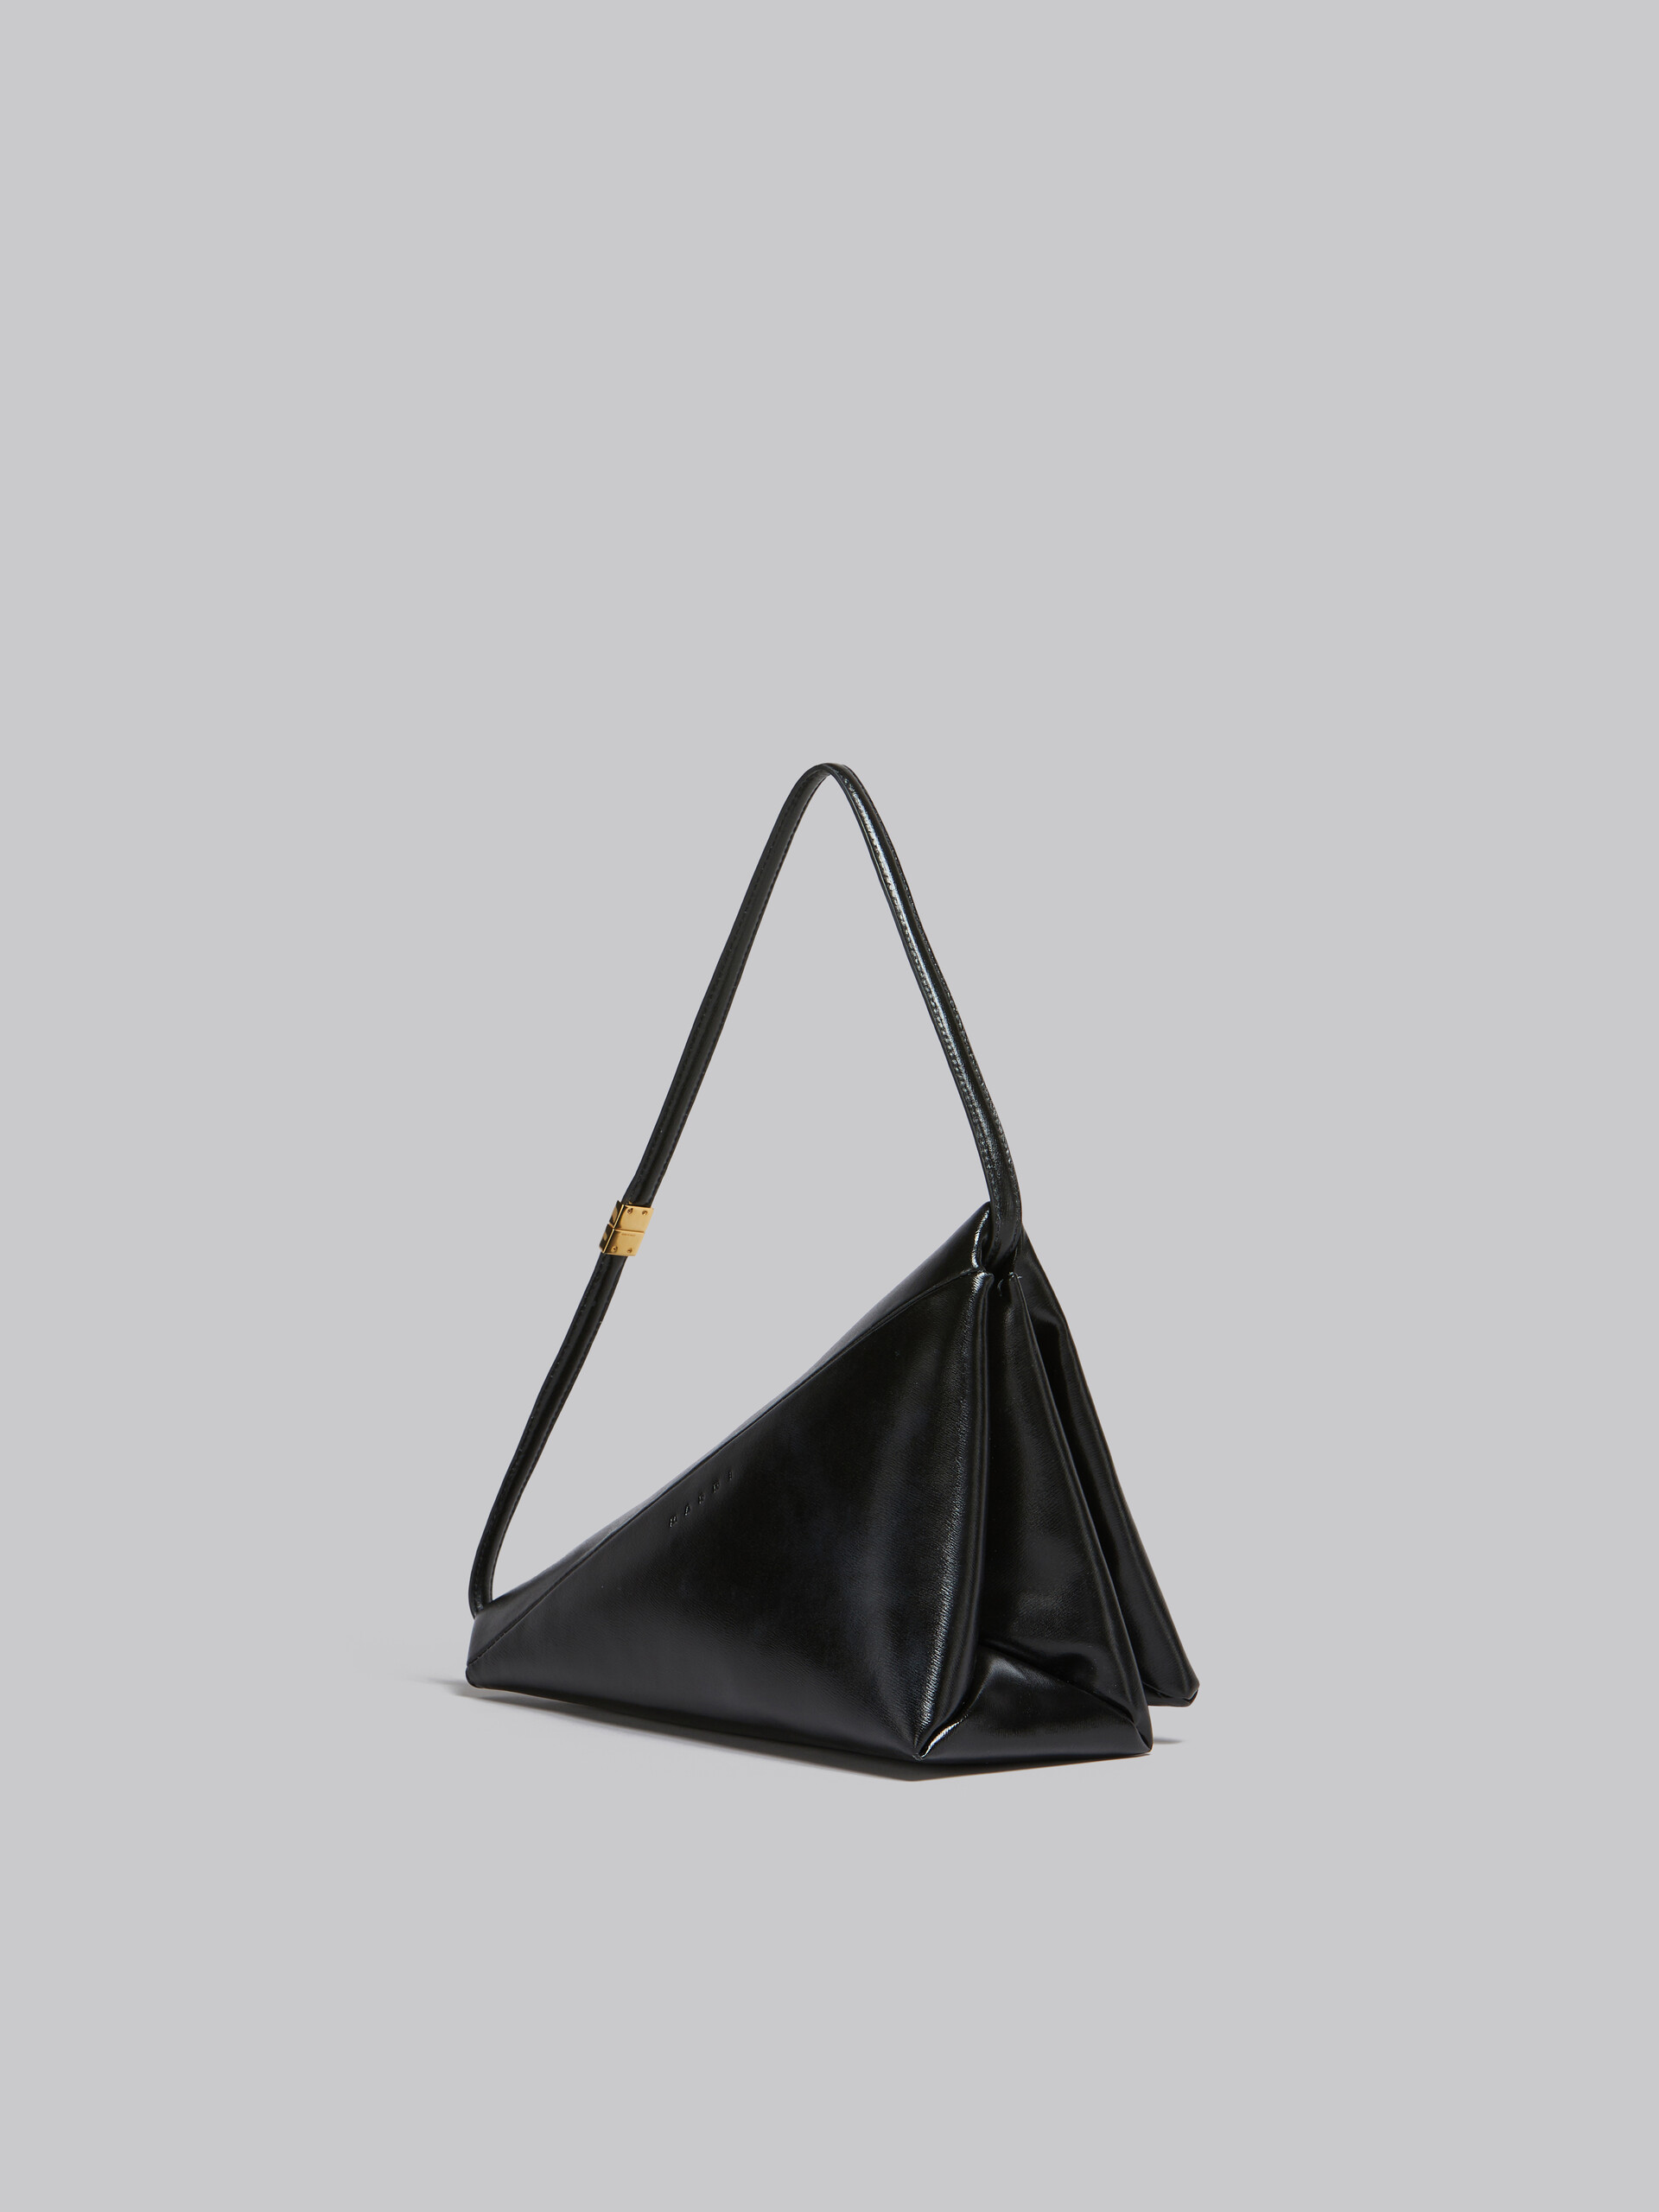 Sac triangulaire Prisma en cuir noir - Sacs portés épaule - Image 3